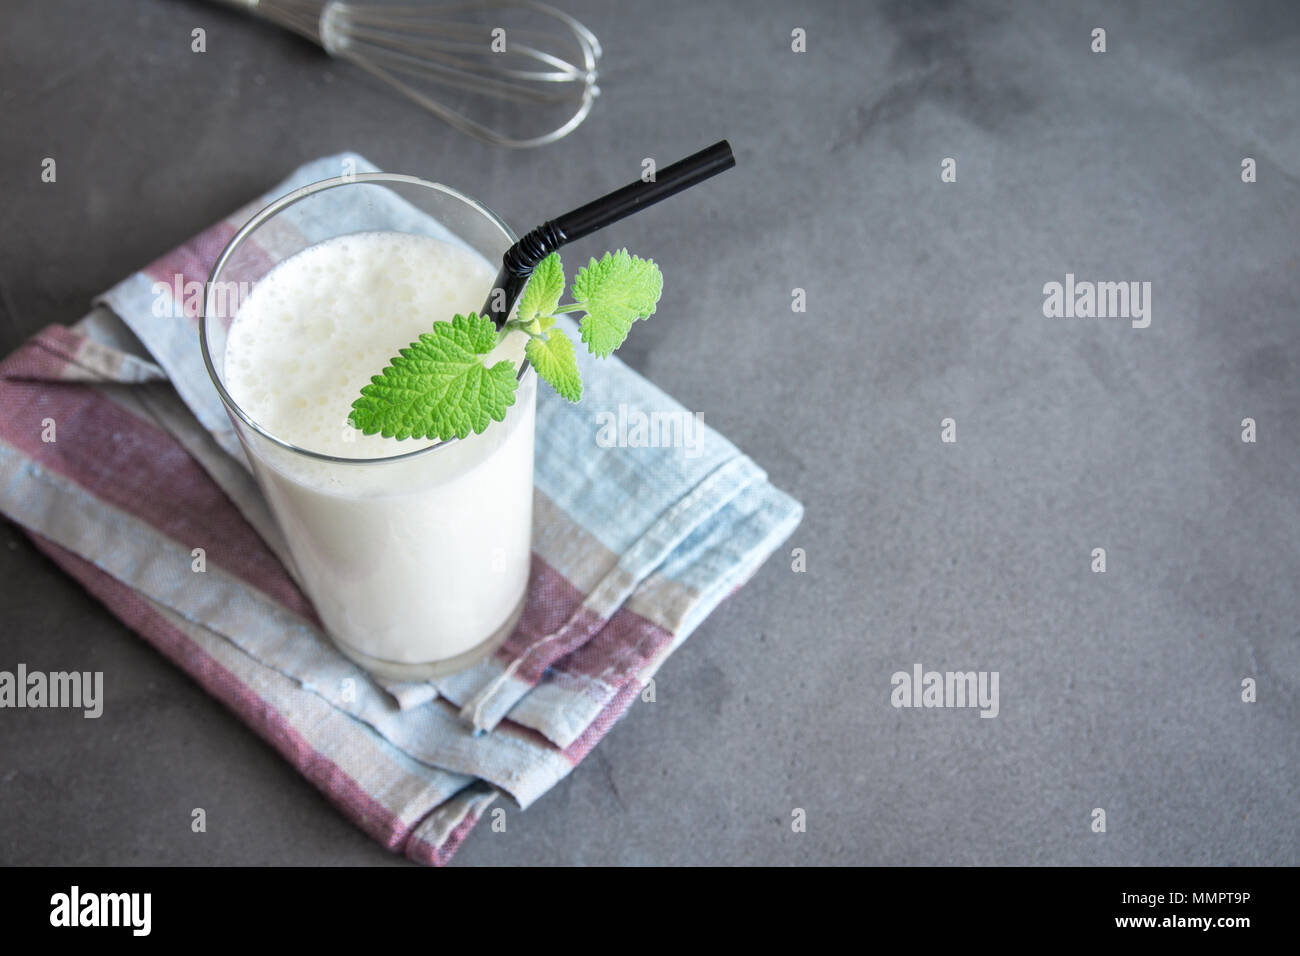 Plaine des yaourts frais (yaourts, yaourts, kéfir, ayran, lassi) en verre avec des herbes sur fond gris, l'espace de copie. Froid da fermenté probiotique Banque D'Images